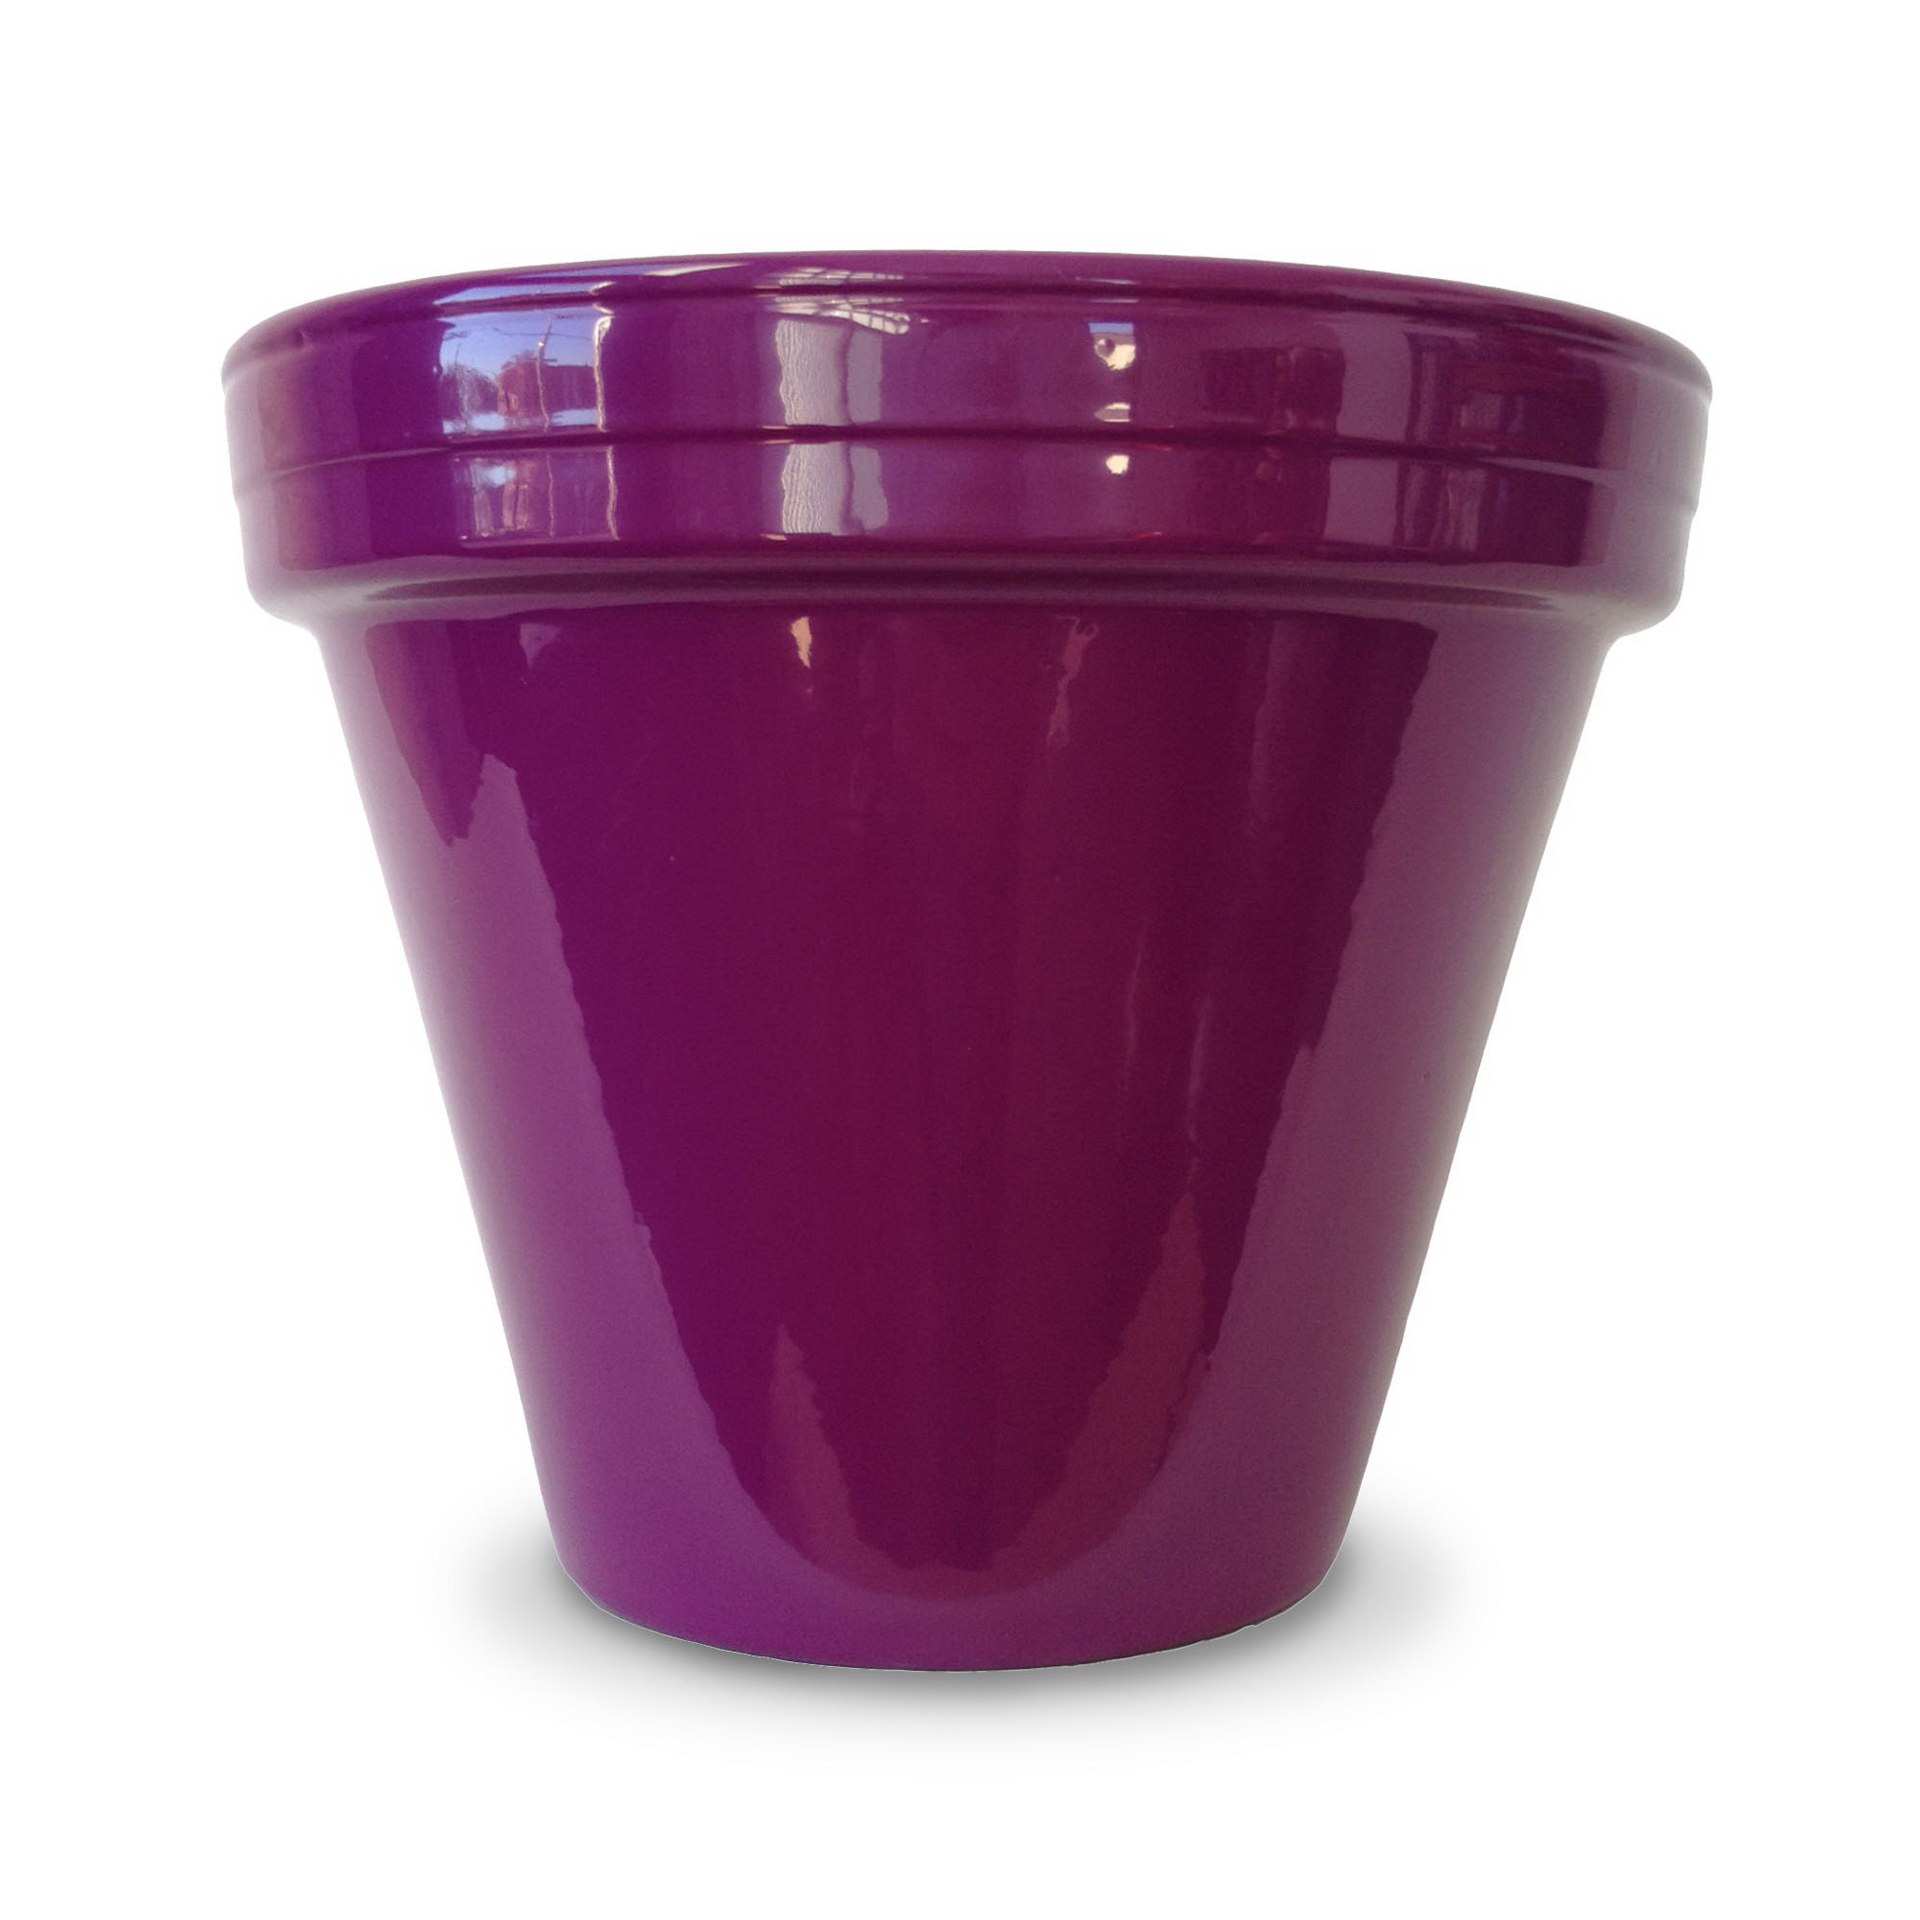 PCSBX-6-V Flower Pot, 5-1/2 in H, 6-1/2 in W, 6-1/2 in D, Ceramic, Violet, Powder-Coated